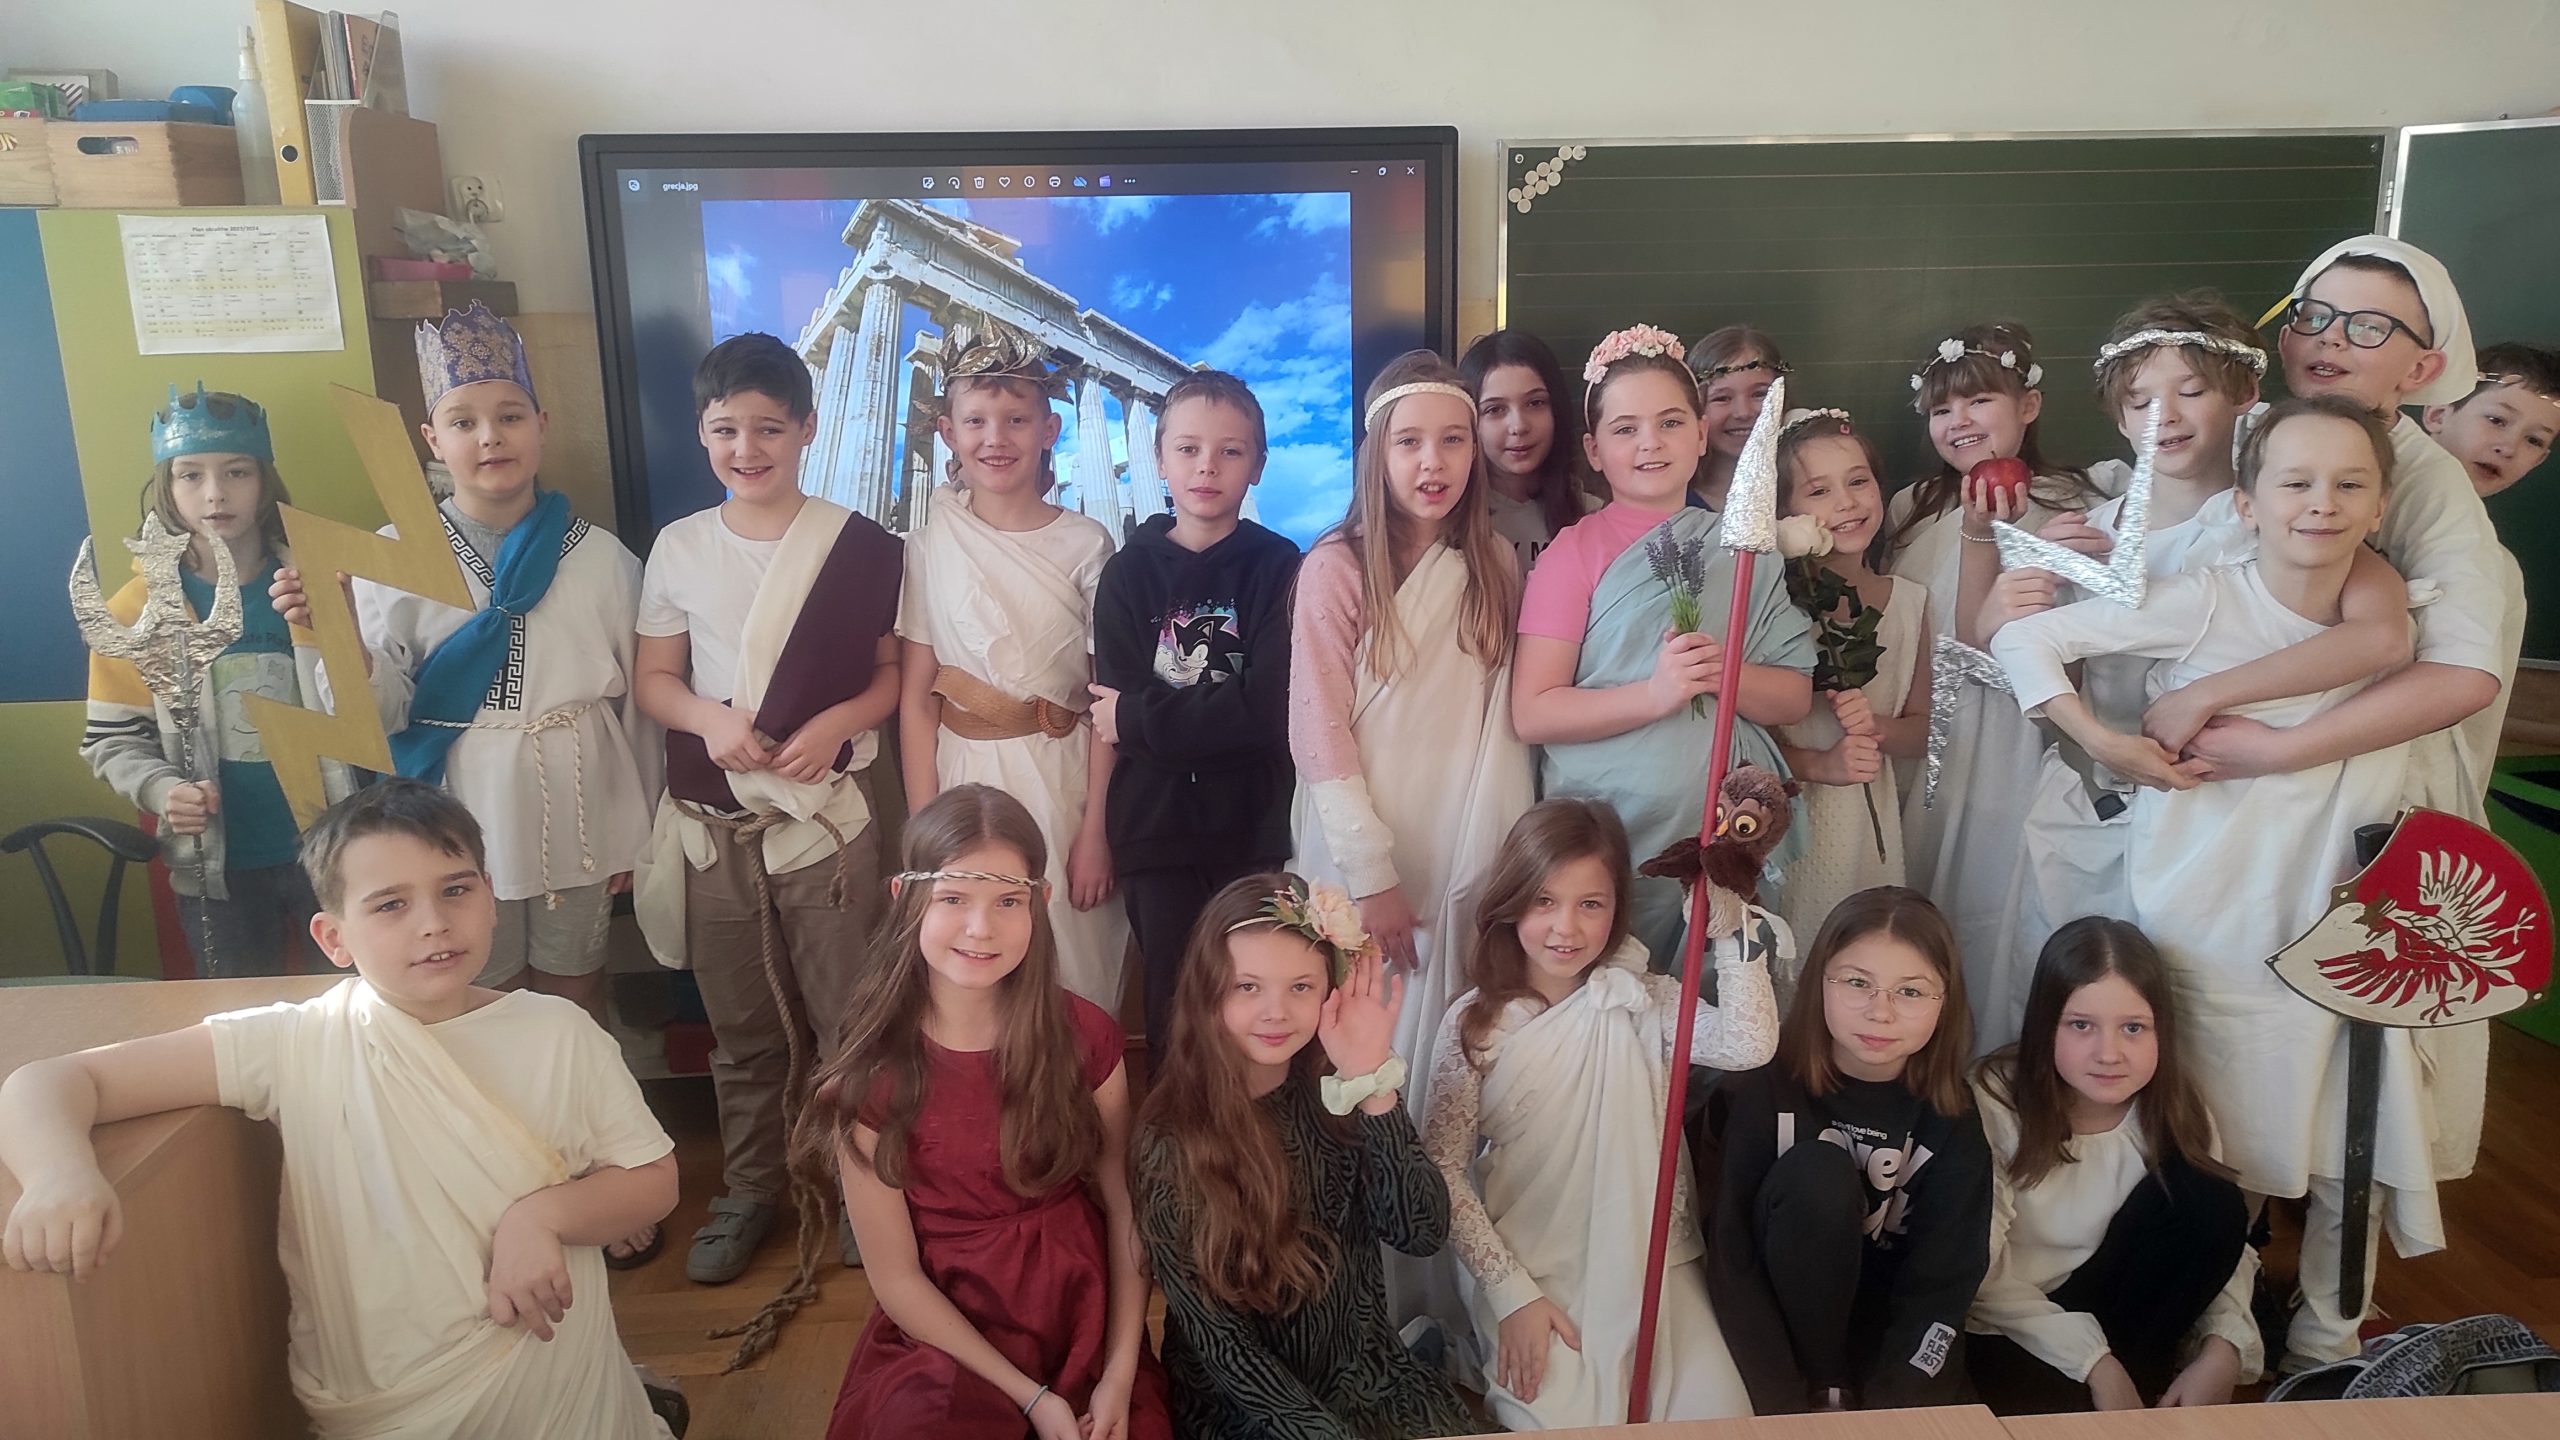 Grupa 21 uczniów przebranych za boginie i bogów z Olimpu ustawiona w 2 rzędach. Pierwszy rząd z tyłu stoi, przed nimi dzieci klęczą. W tle Partenon wyświetlony na telewizorze.